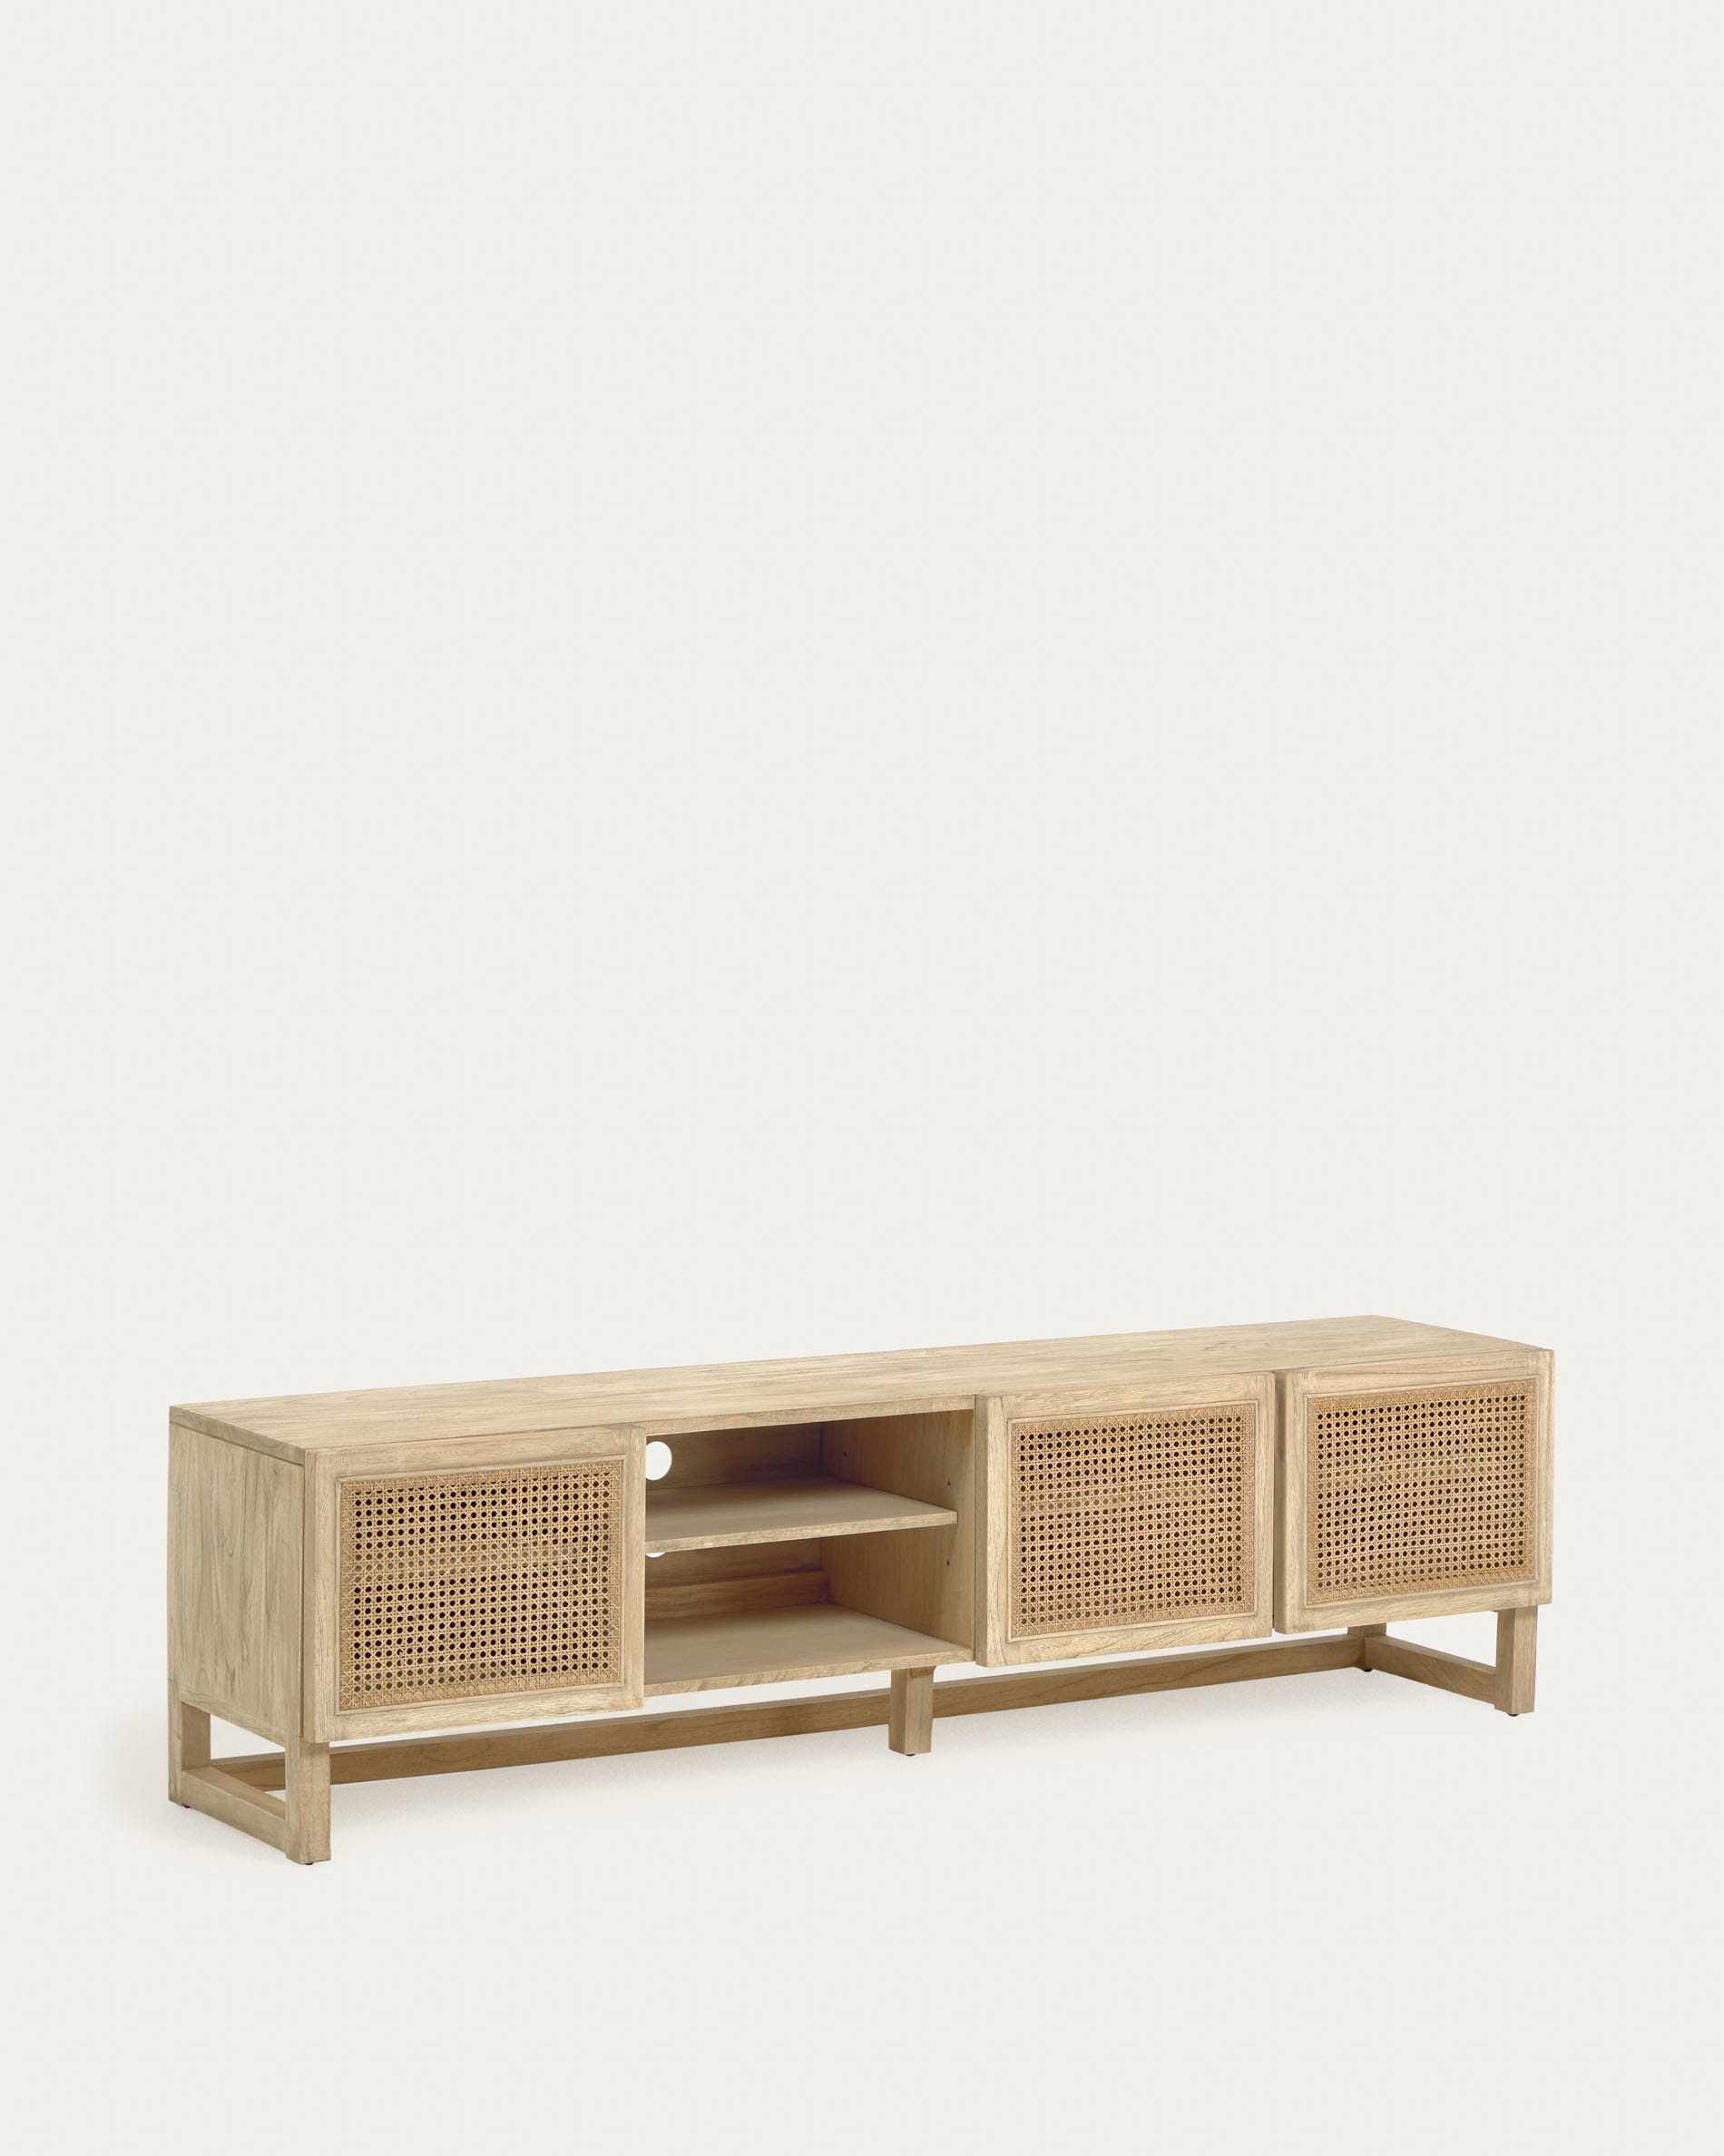 mueble tv madera roble de estilo colonial y tres cajones, de